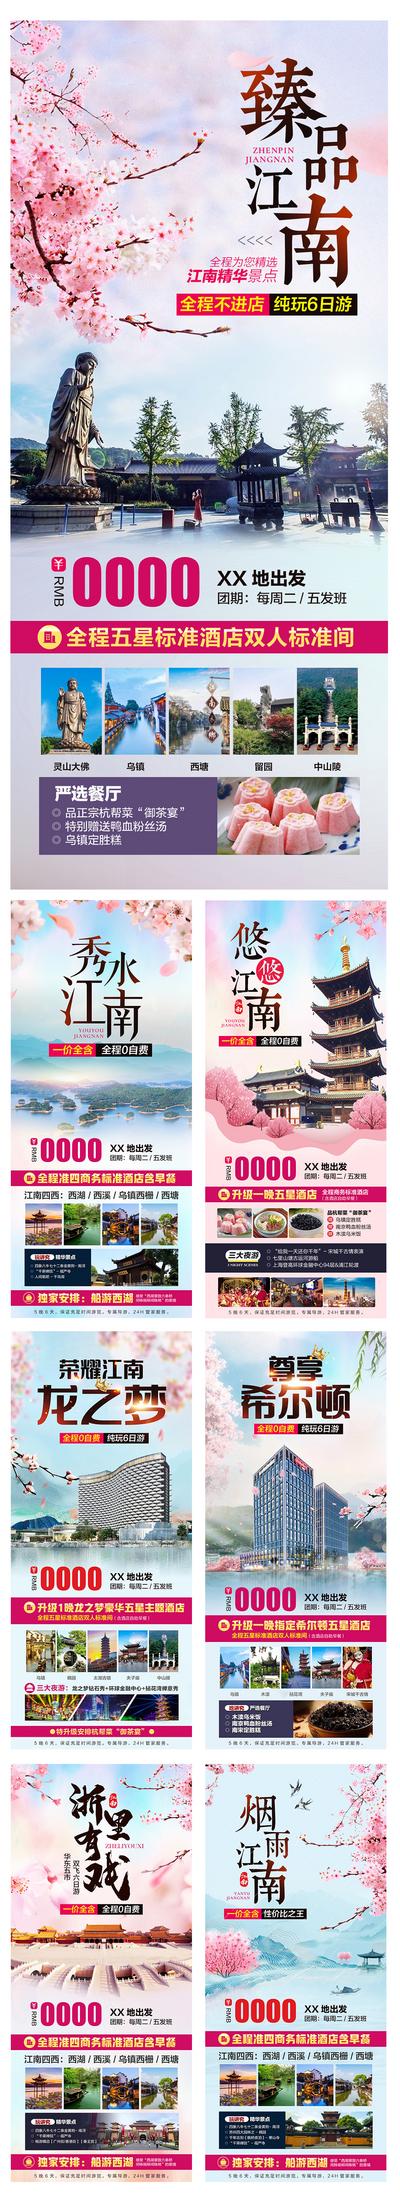 【南门网】海报 旅游 江南 南京 乌镇 西湖 酒店 樱花 景点